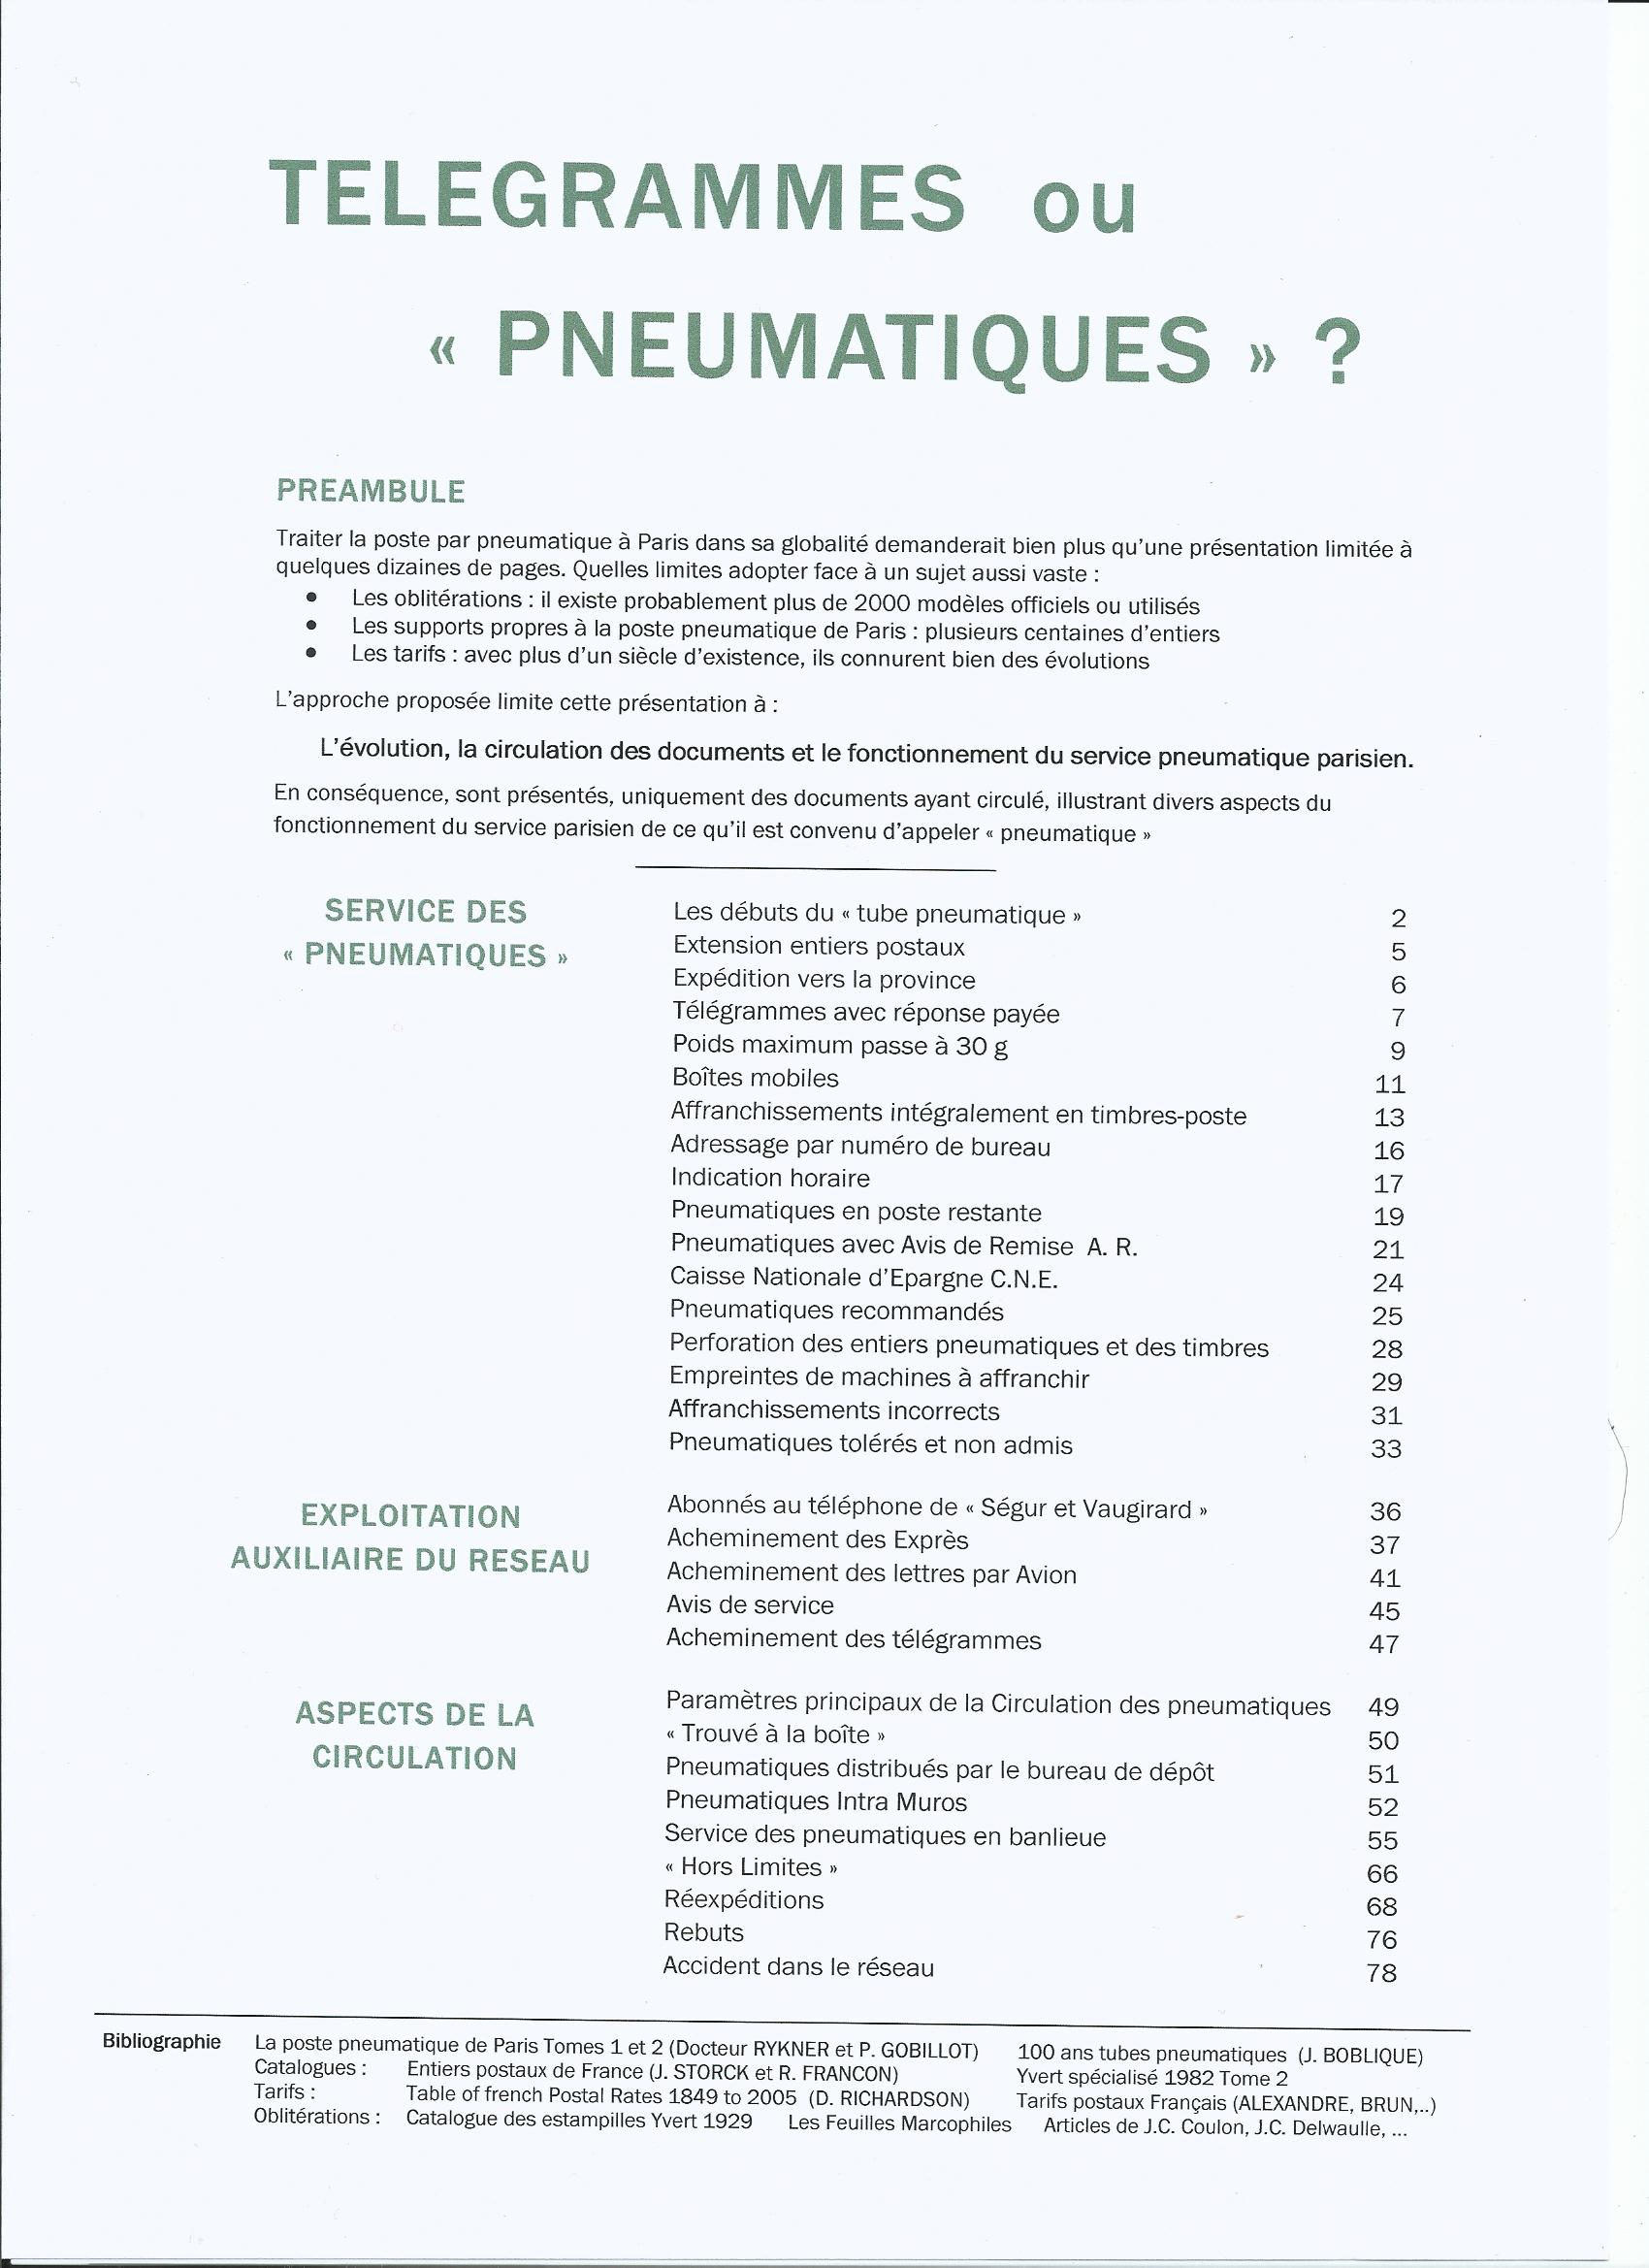 T��l��grammes ou pneumatiques p. 1